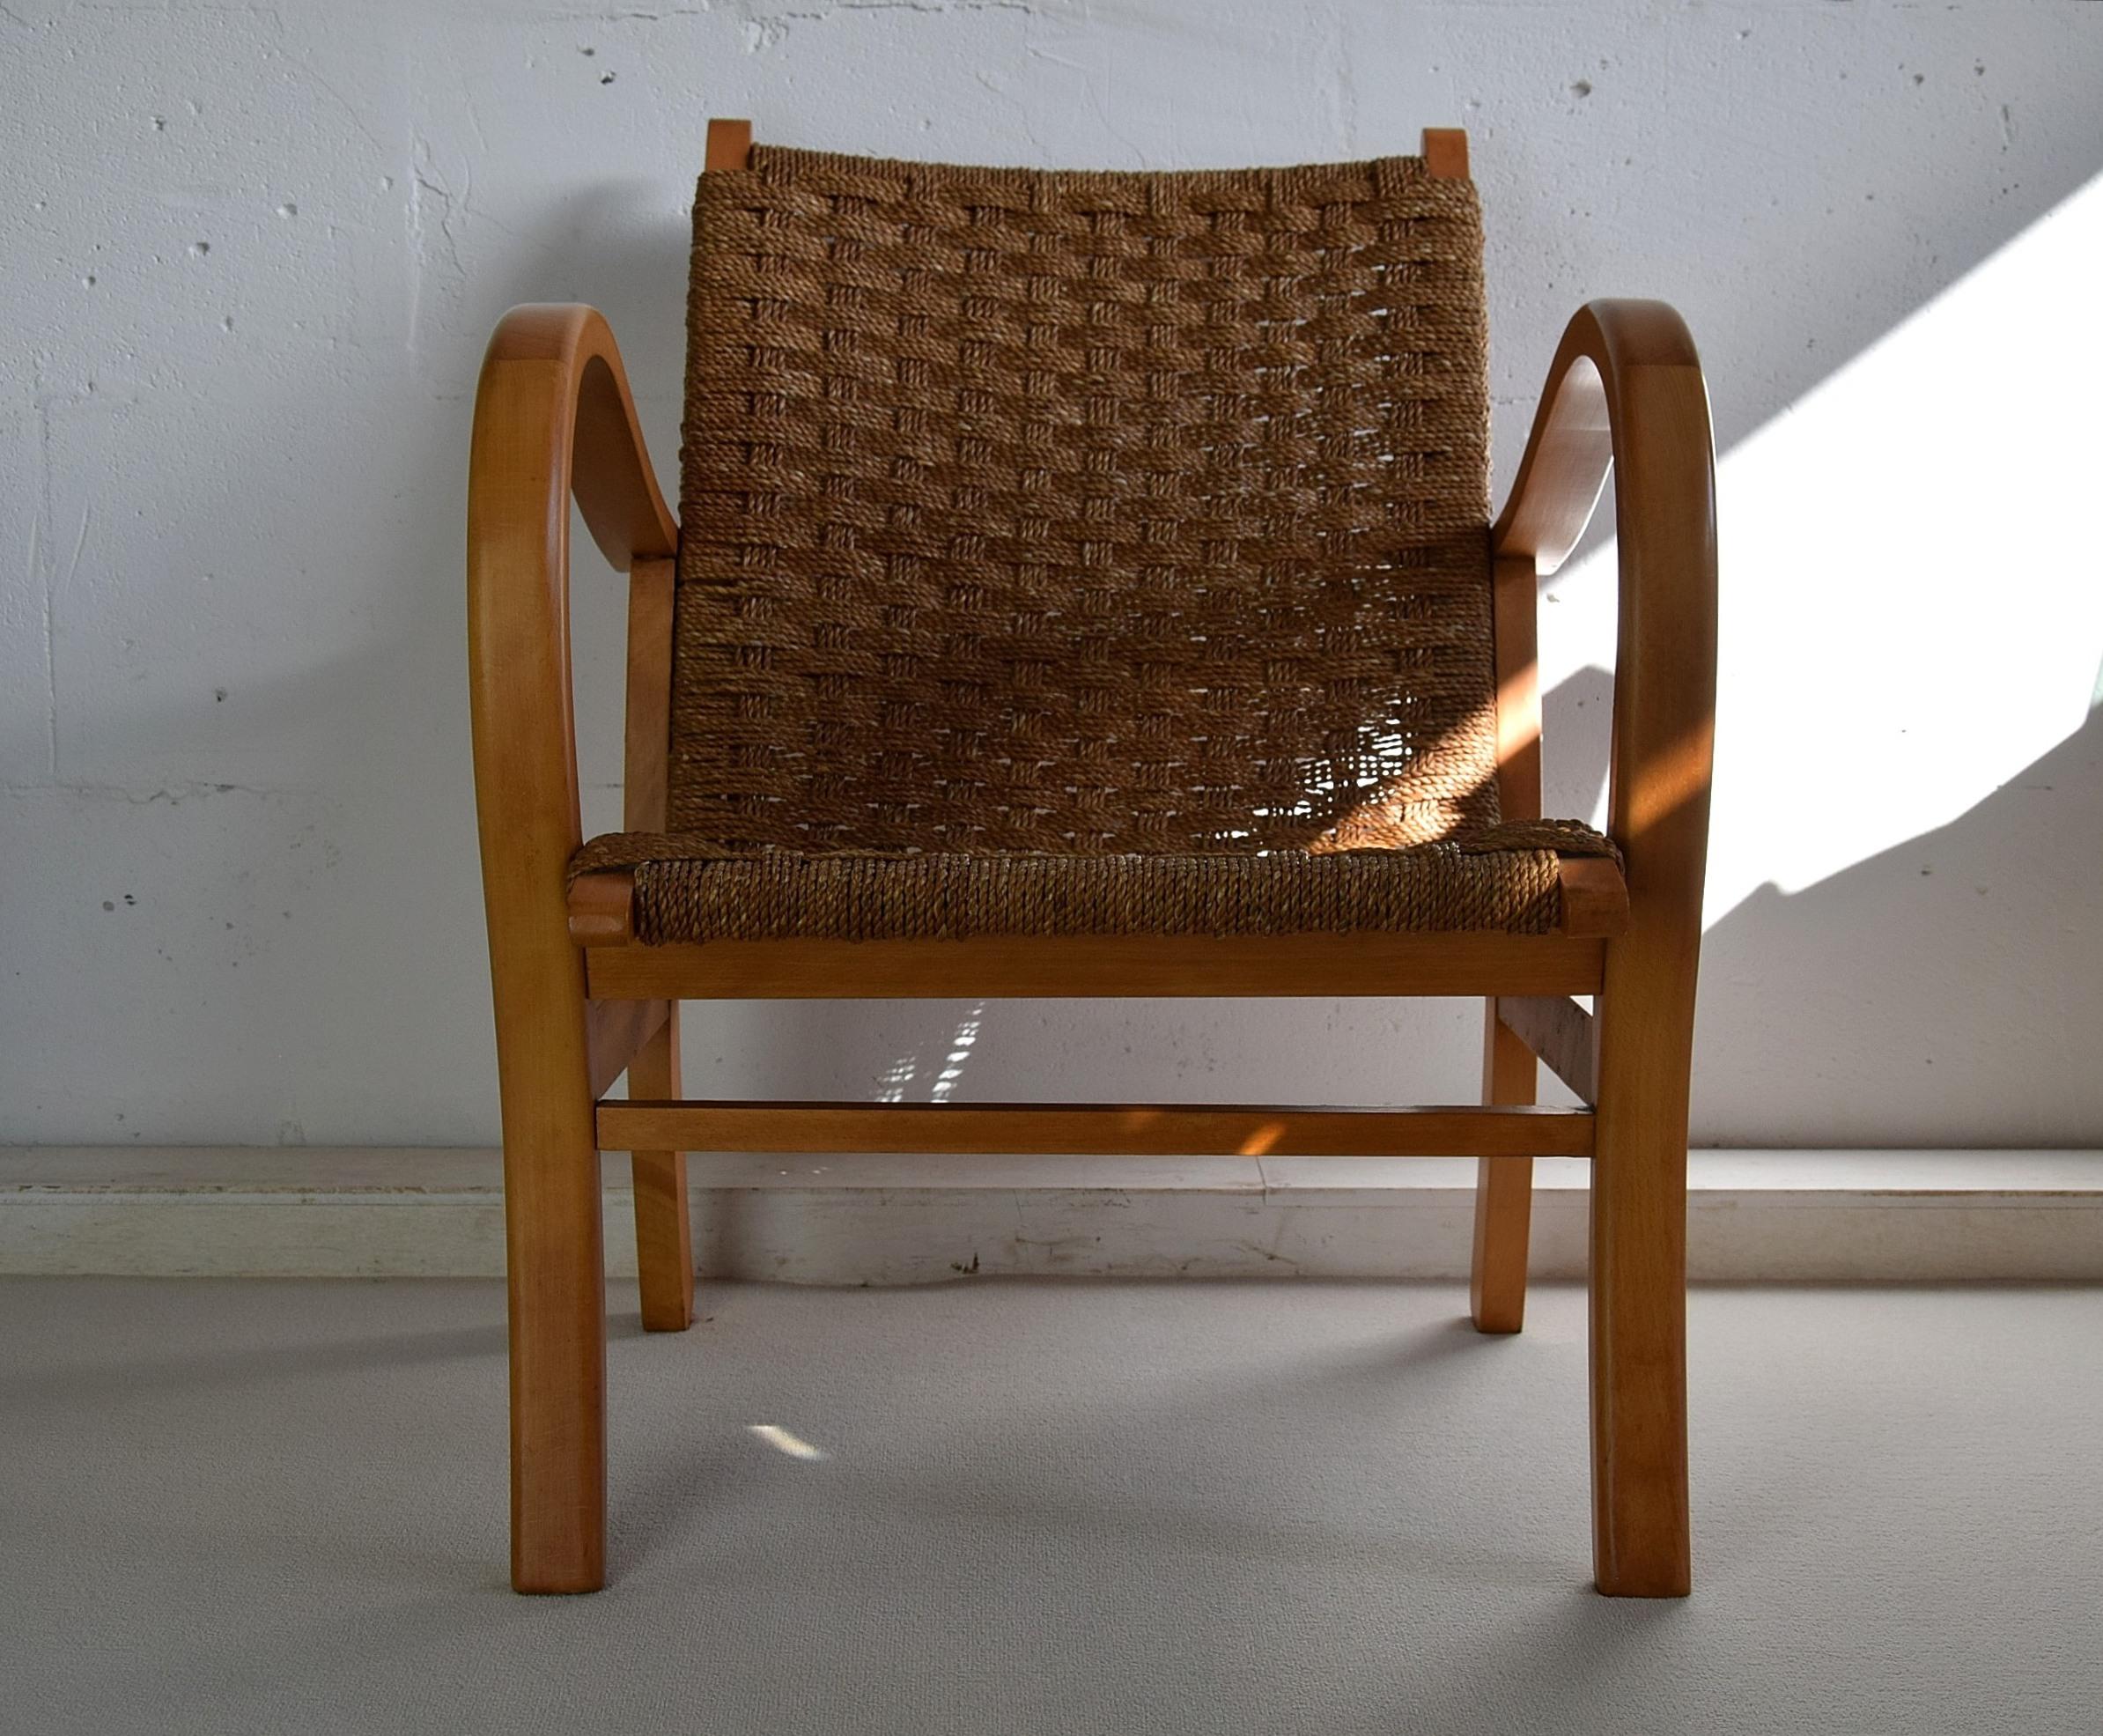 Erich Dieckmann, fauteuil Bauhaus en hêtre et corde de papier, Allemagne, 1925.
Il s'agit d'un rare fauteuil Bauhaus du designer allemand Erich Dieckmann créé dans les années 1920. Le design reprend la philosophie du Bauhaus, selon laquelle la